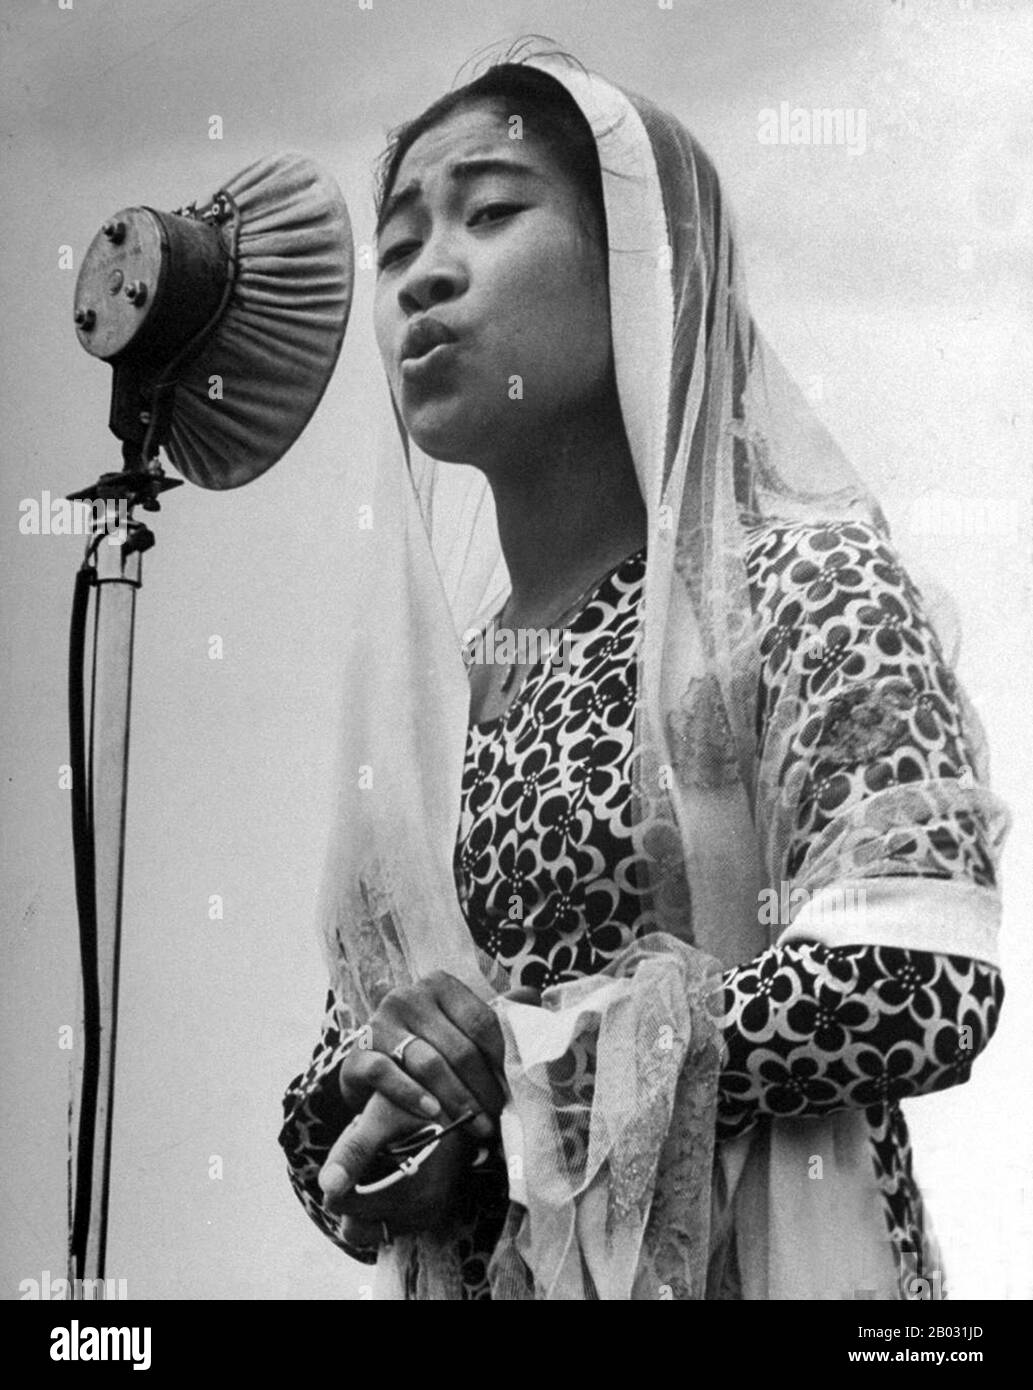 Fatmawati (5 Février 1923 – 14 Mai 1980) Est Un Héros National De L'Indonésie (Indonésien : Pahlawan Nasional Indonesia). En tant que première dame indonésienne, elle était la troisième femme de Sukarno, la première présidente de l'Indonésie, et la mère de la première femme présidente de l'Indonésie, Megawati Sukarnoputri. Elle a conçu et cousu le premier drapeau volé par l'Indonésie indépendante. Banque D'Images